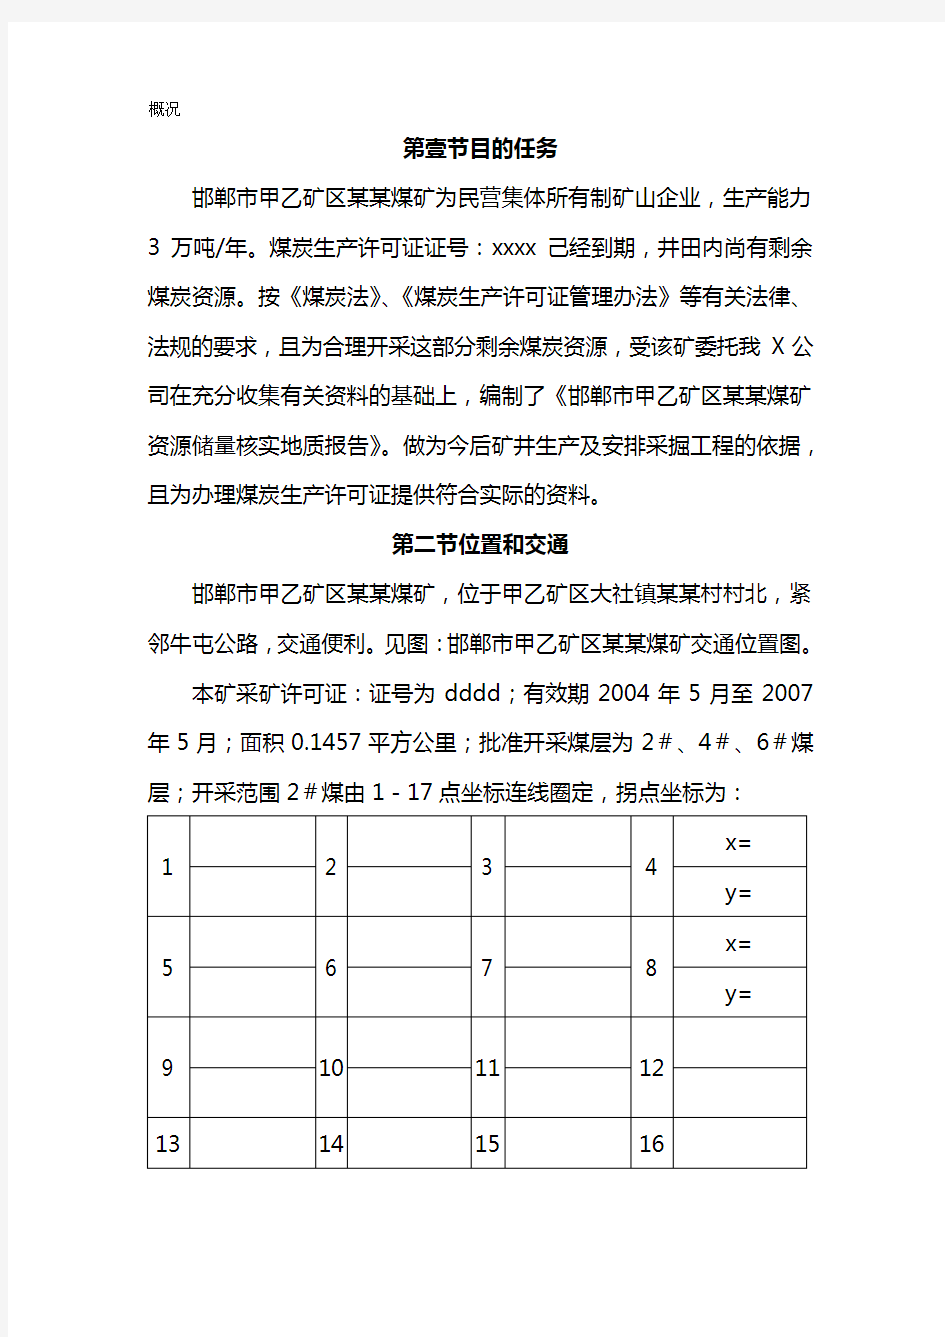 (冶金行业)邯郸市小屯煤矿矿区某煤矿储量核实报告